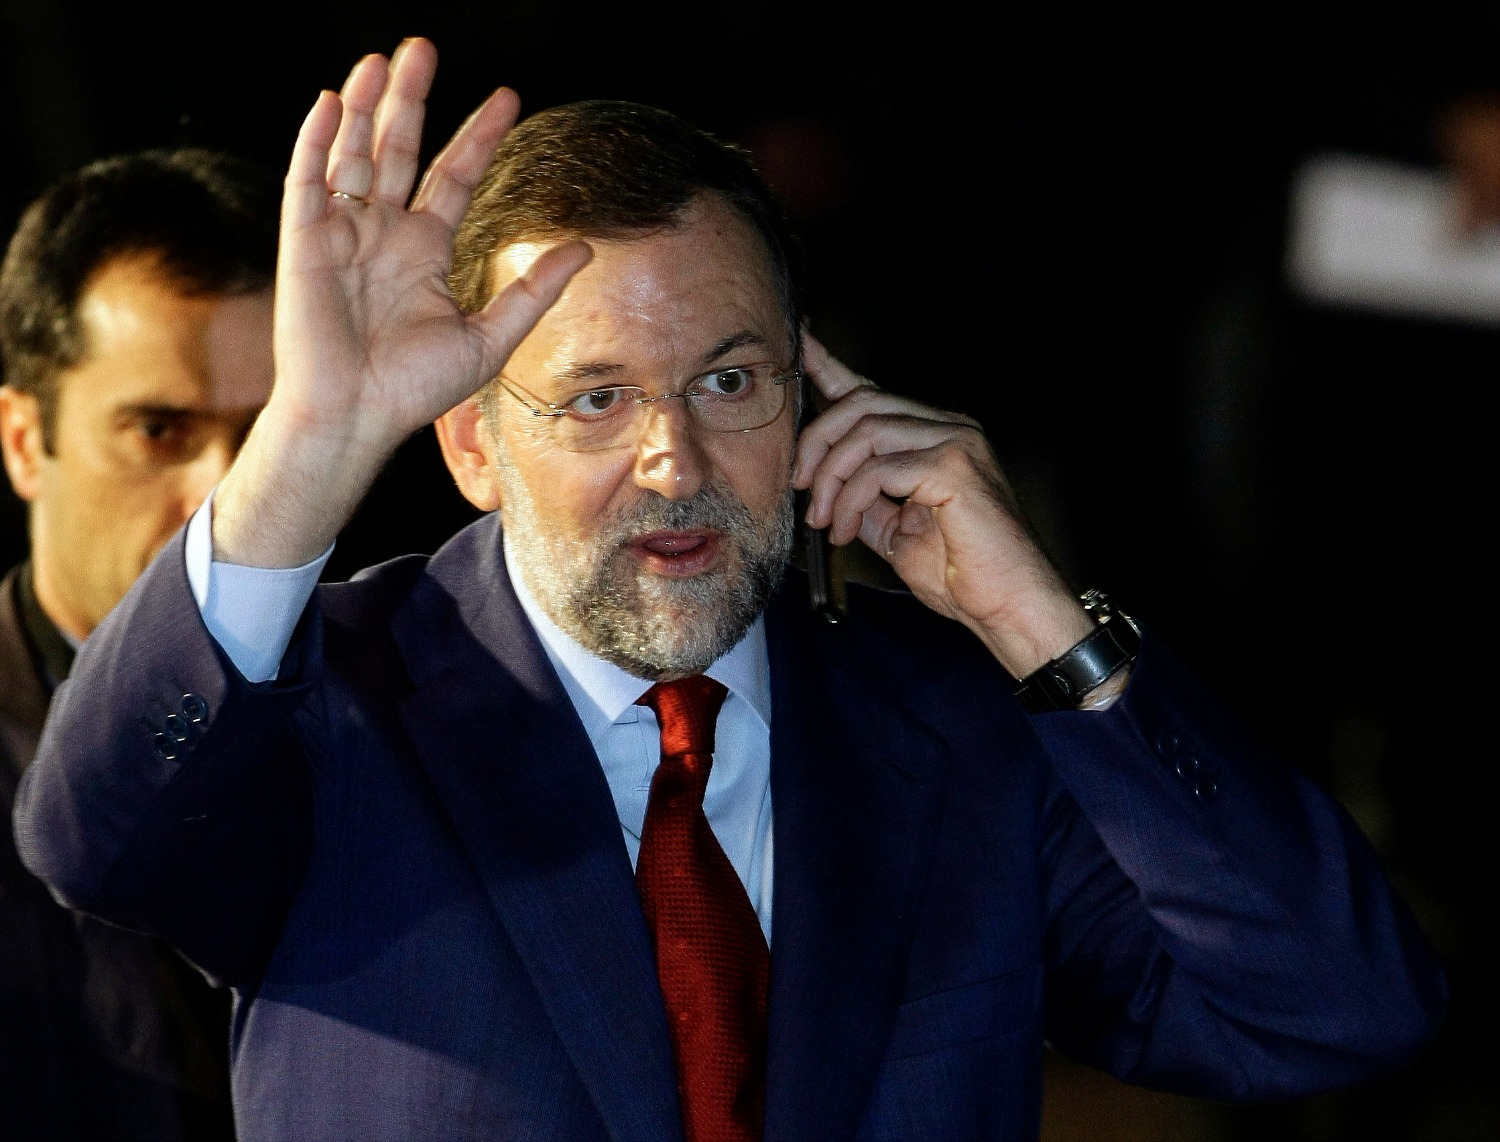 Rajoy y Trump hablan por primera vez y acuerdan mantener el actual “estrecho nivel de confianza” bilateral